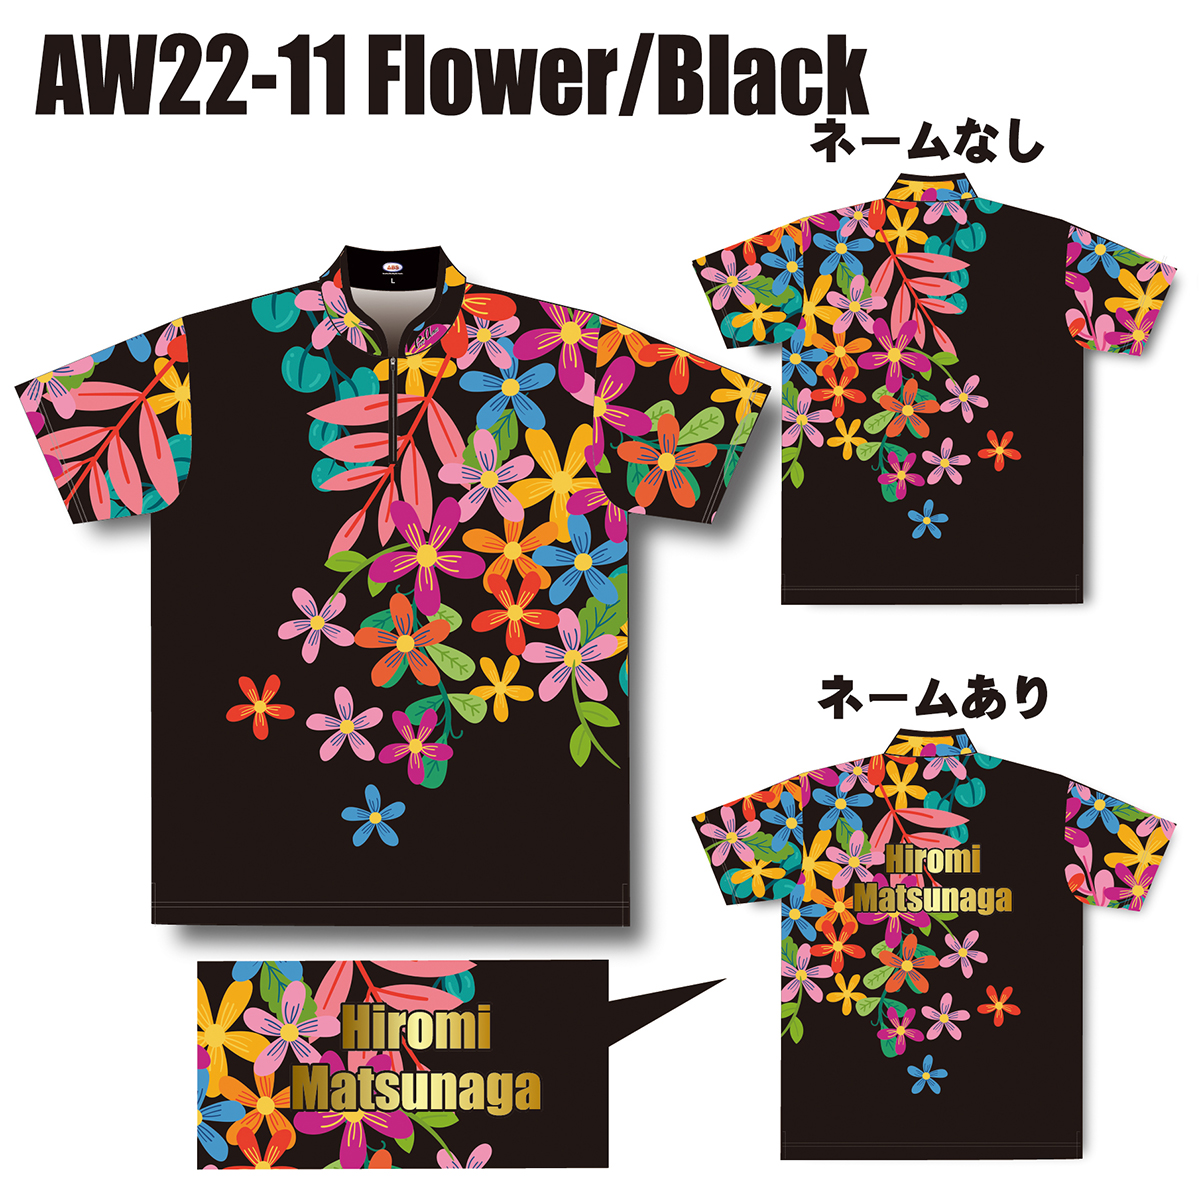 2022スプリングモデル(AW22-11 Flower/Black)